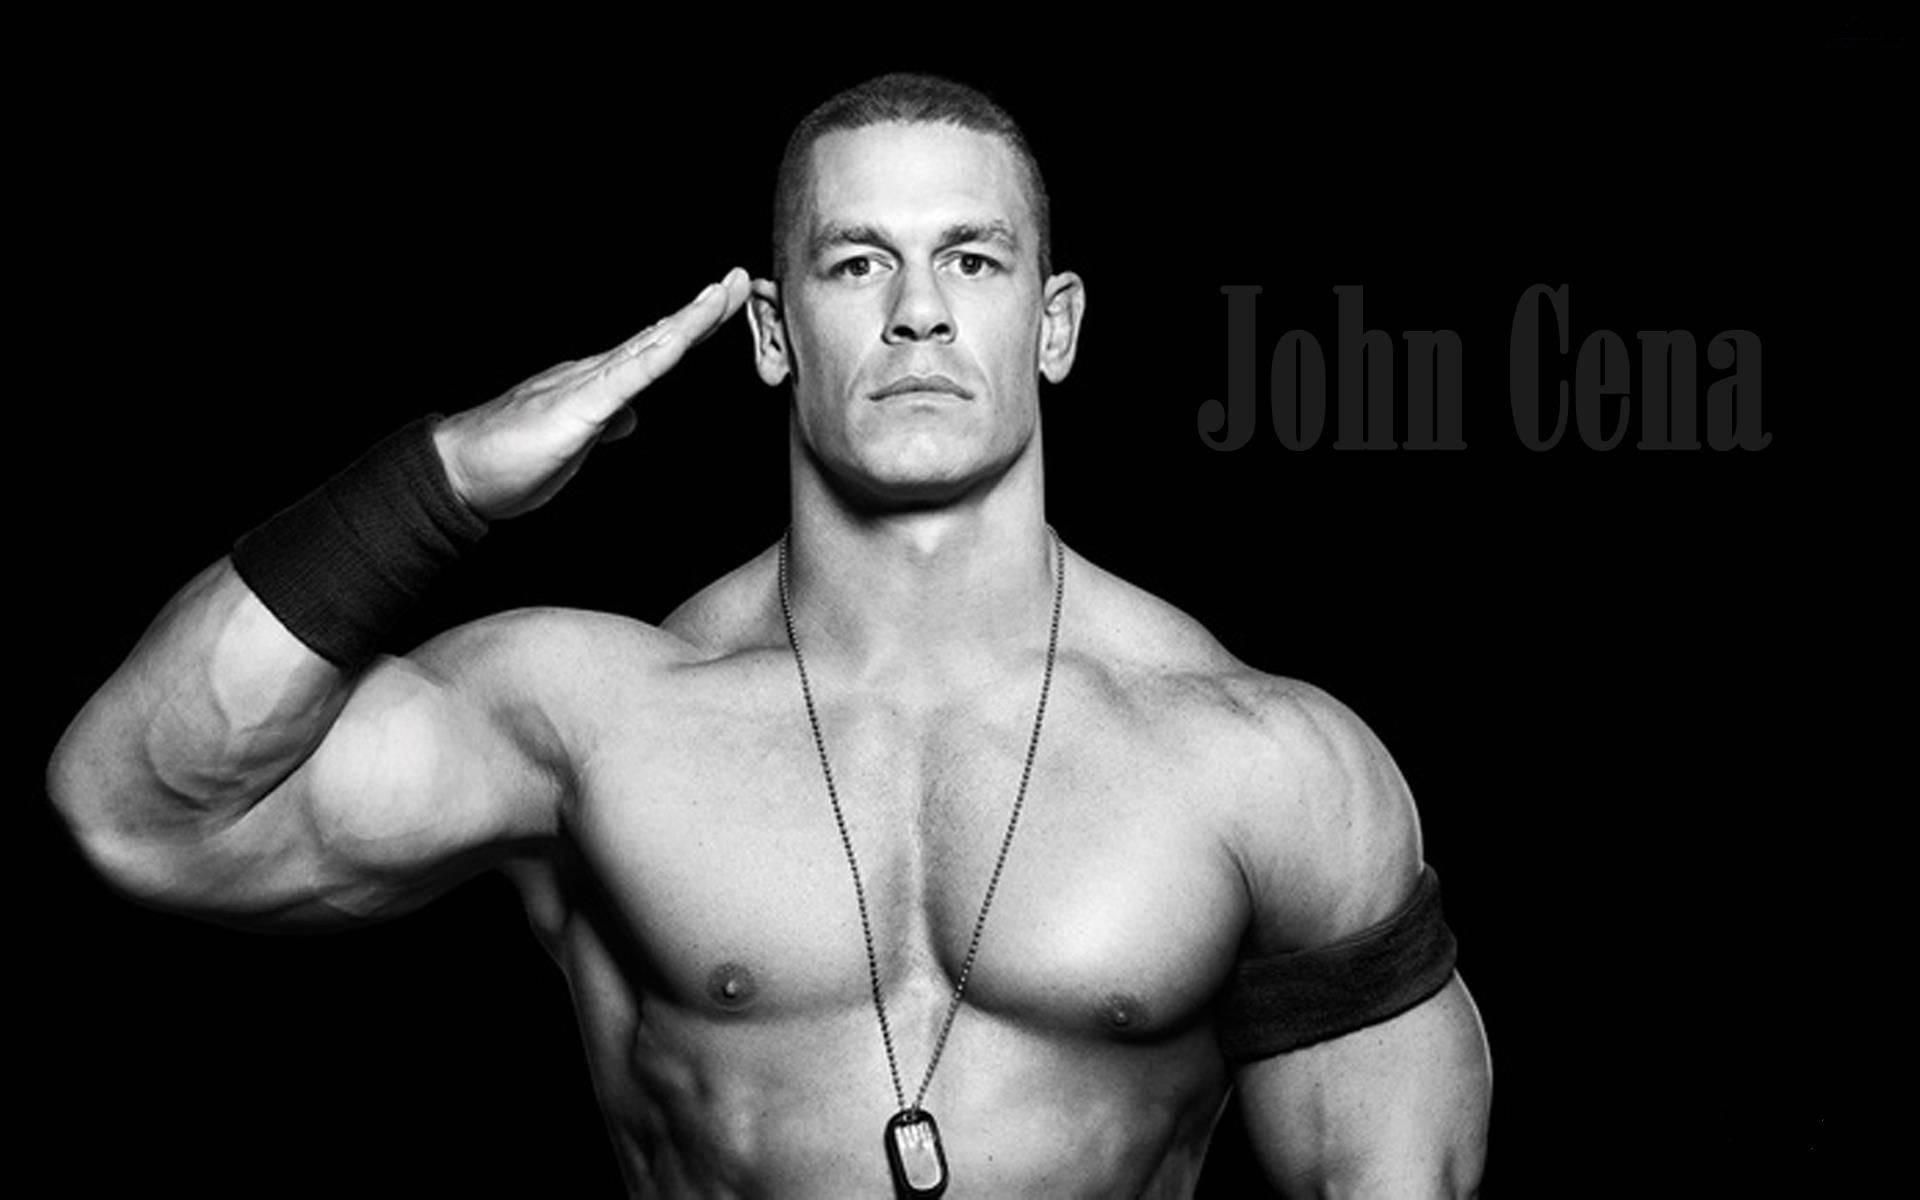 John Cena In Black And White